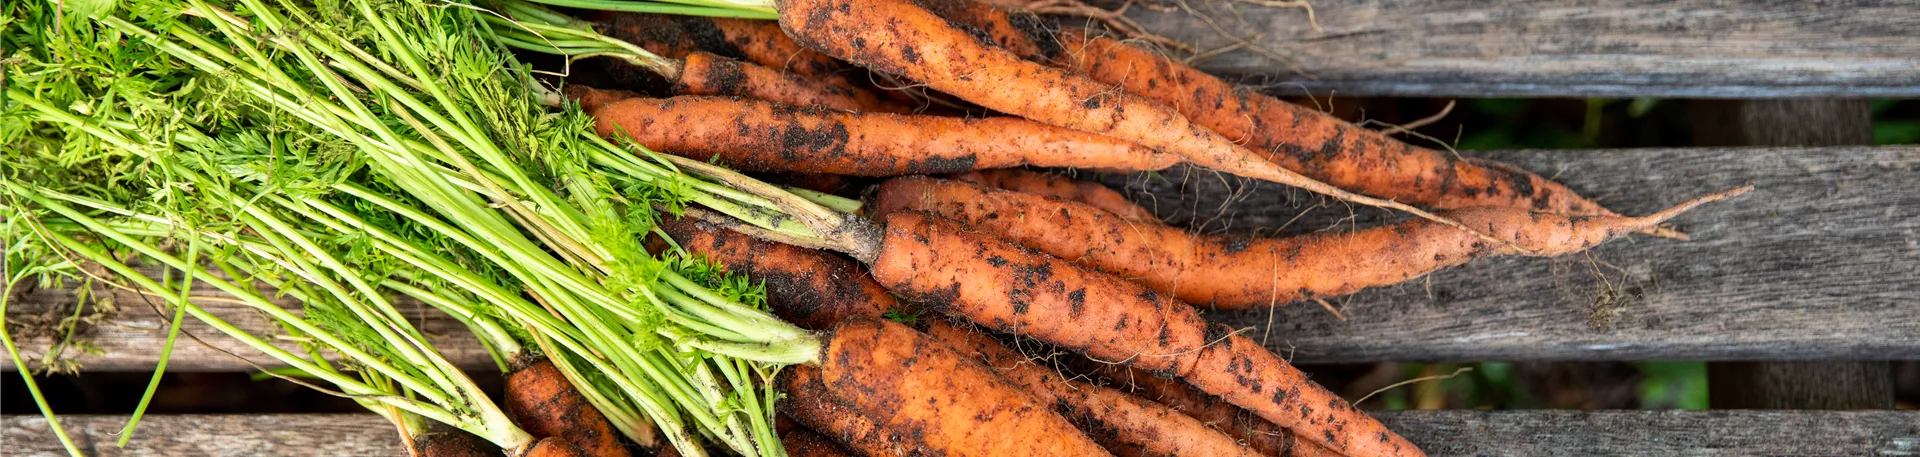 Gemüseernte - Karotten